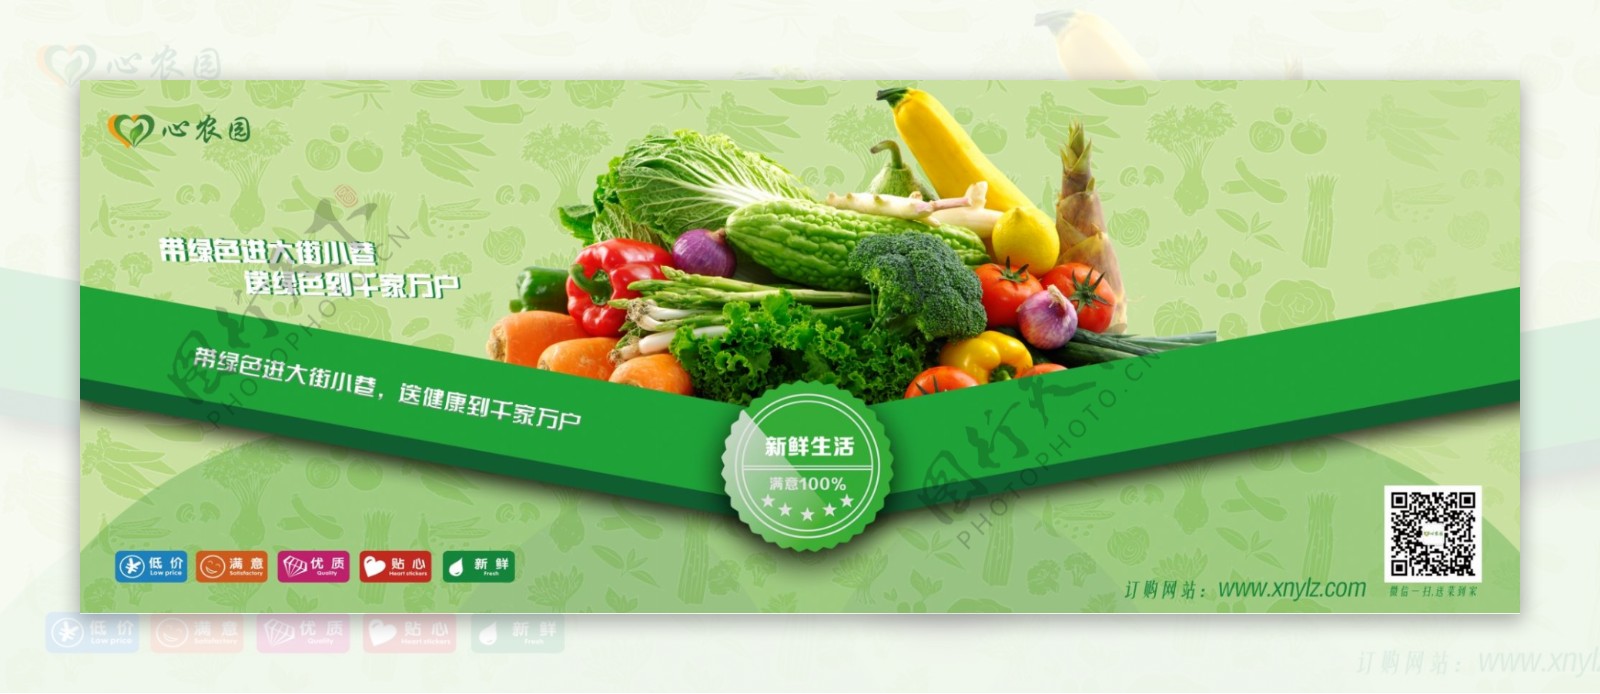 蔬菜候车厅广告